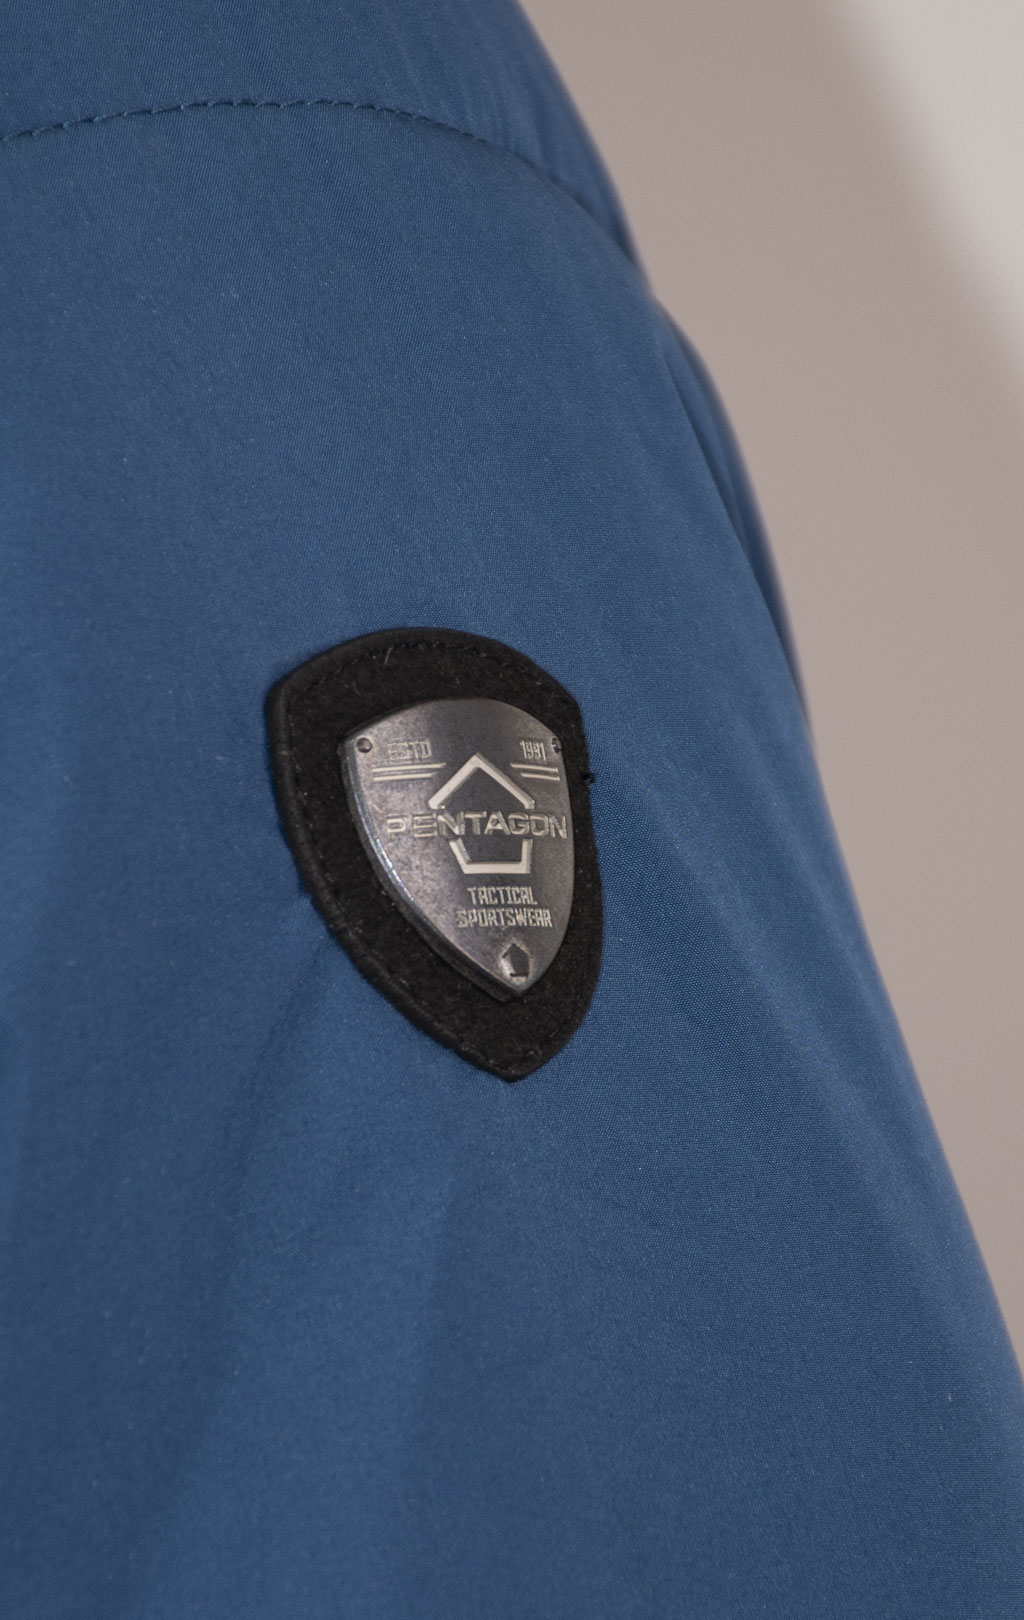 Куртка Pentagon TAURUS утеплённая с капюшоном raf blue 08050 